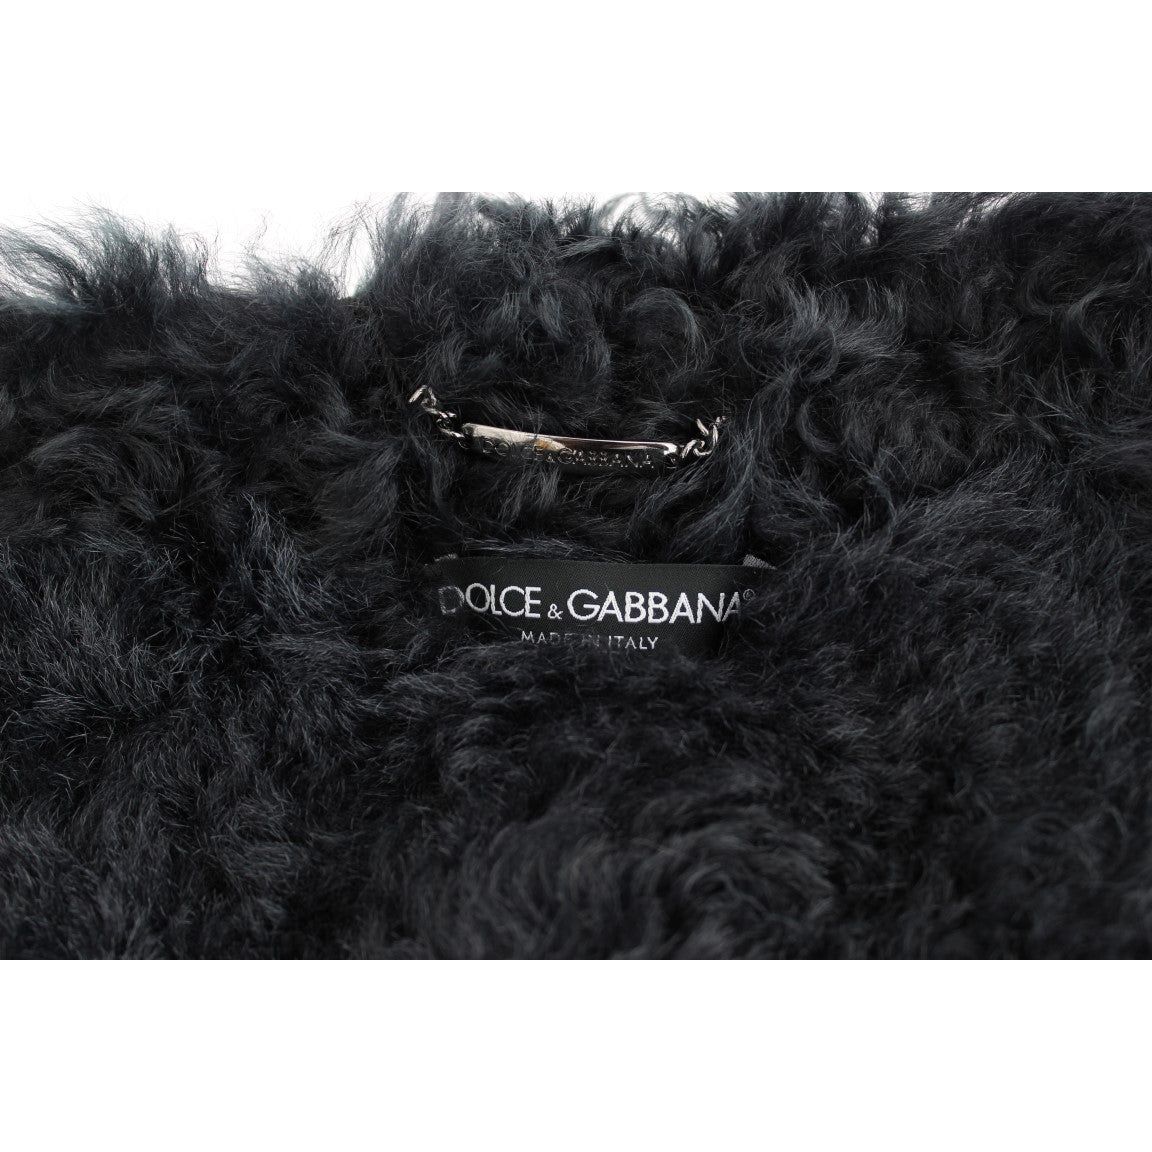 Dolce & Gabbana | Black Goat Fur Shearling Long Jacket Coat | McRichard Designer Brands